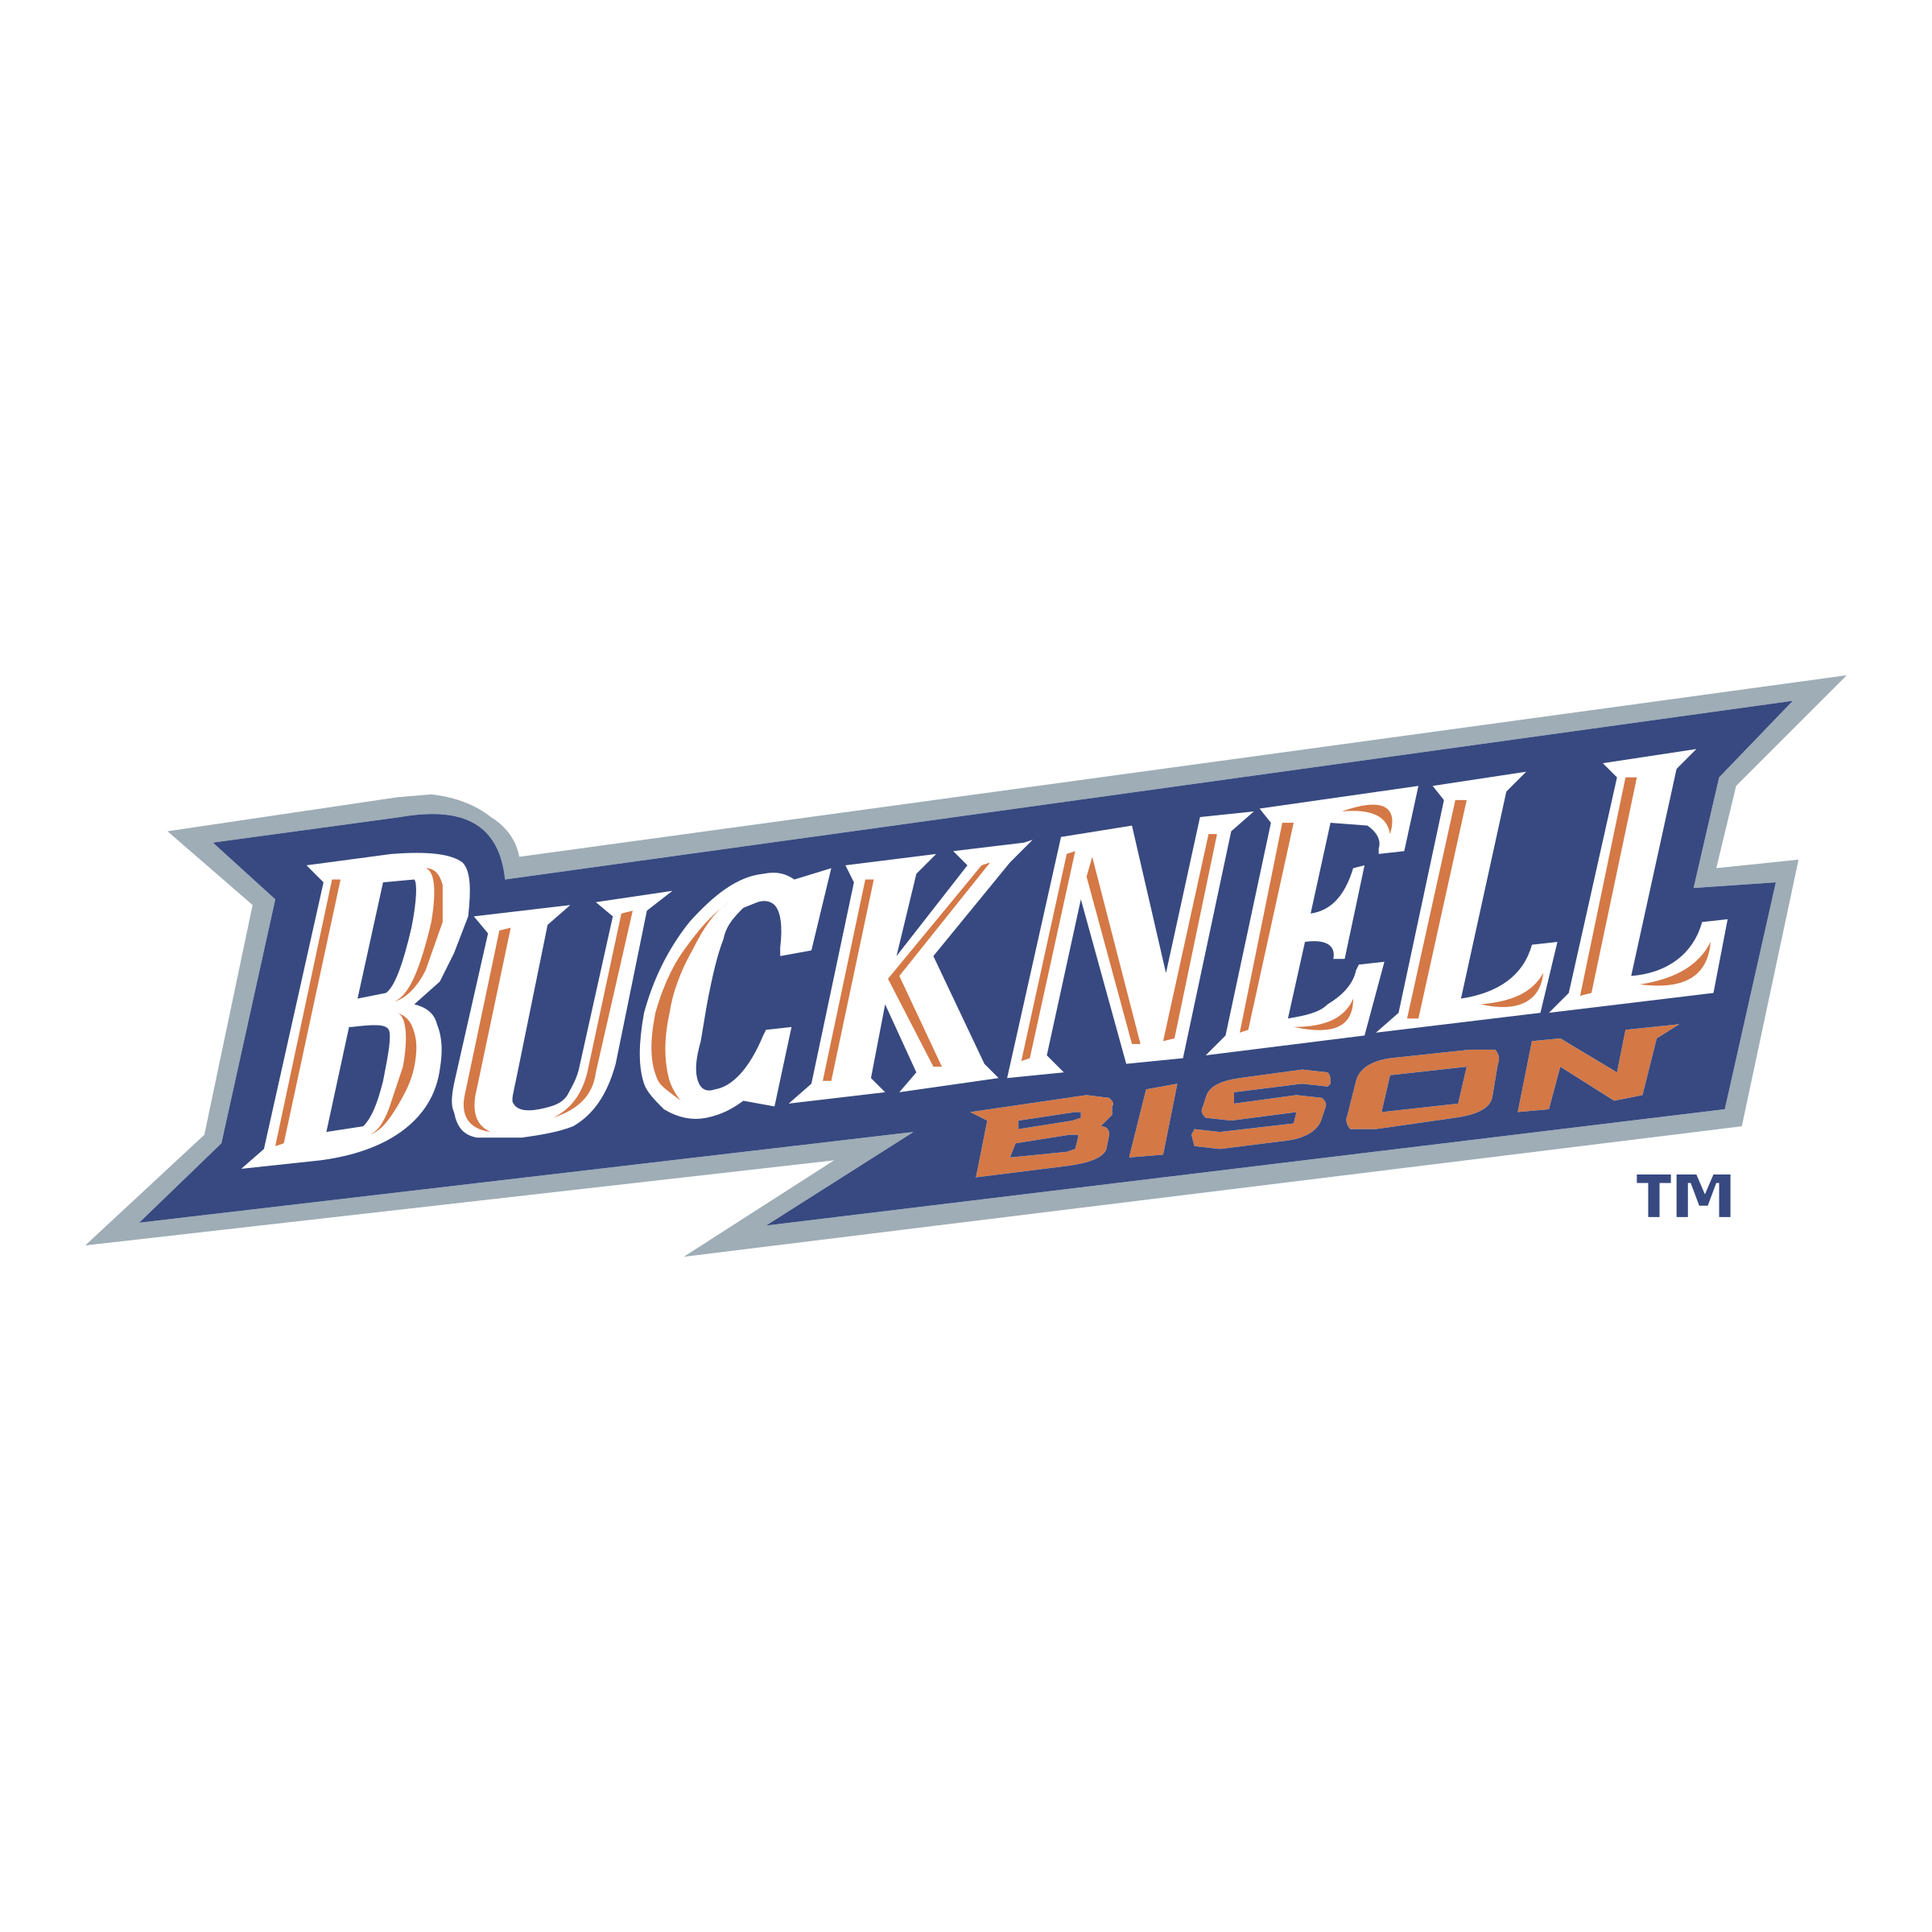 Bucknell Bison Logo - Bucknell Bison Logo PNG Transparent & SVG Vector